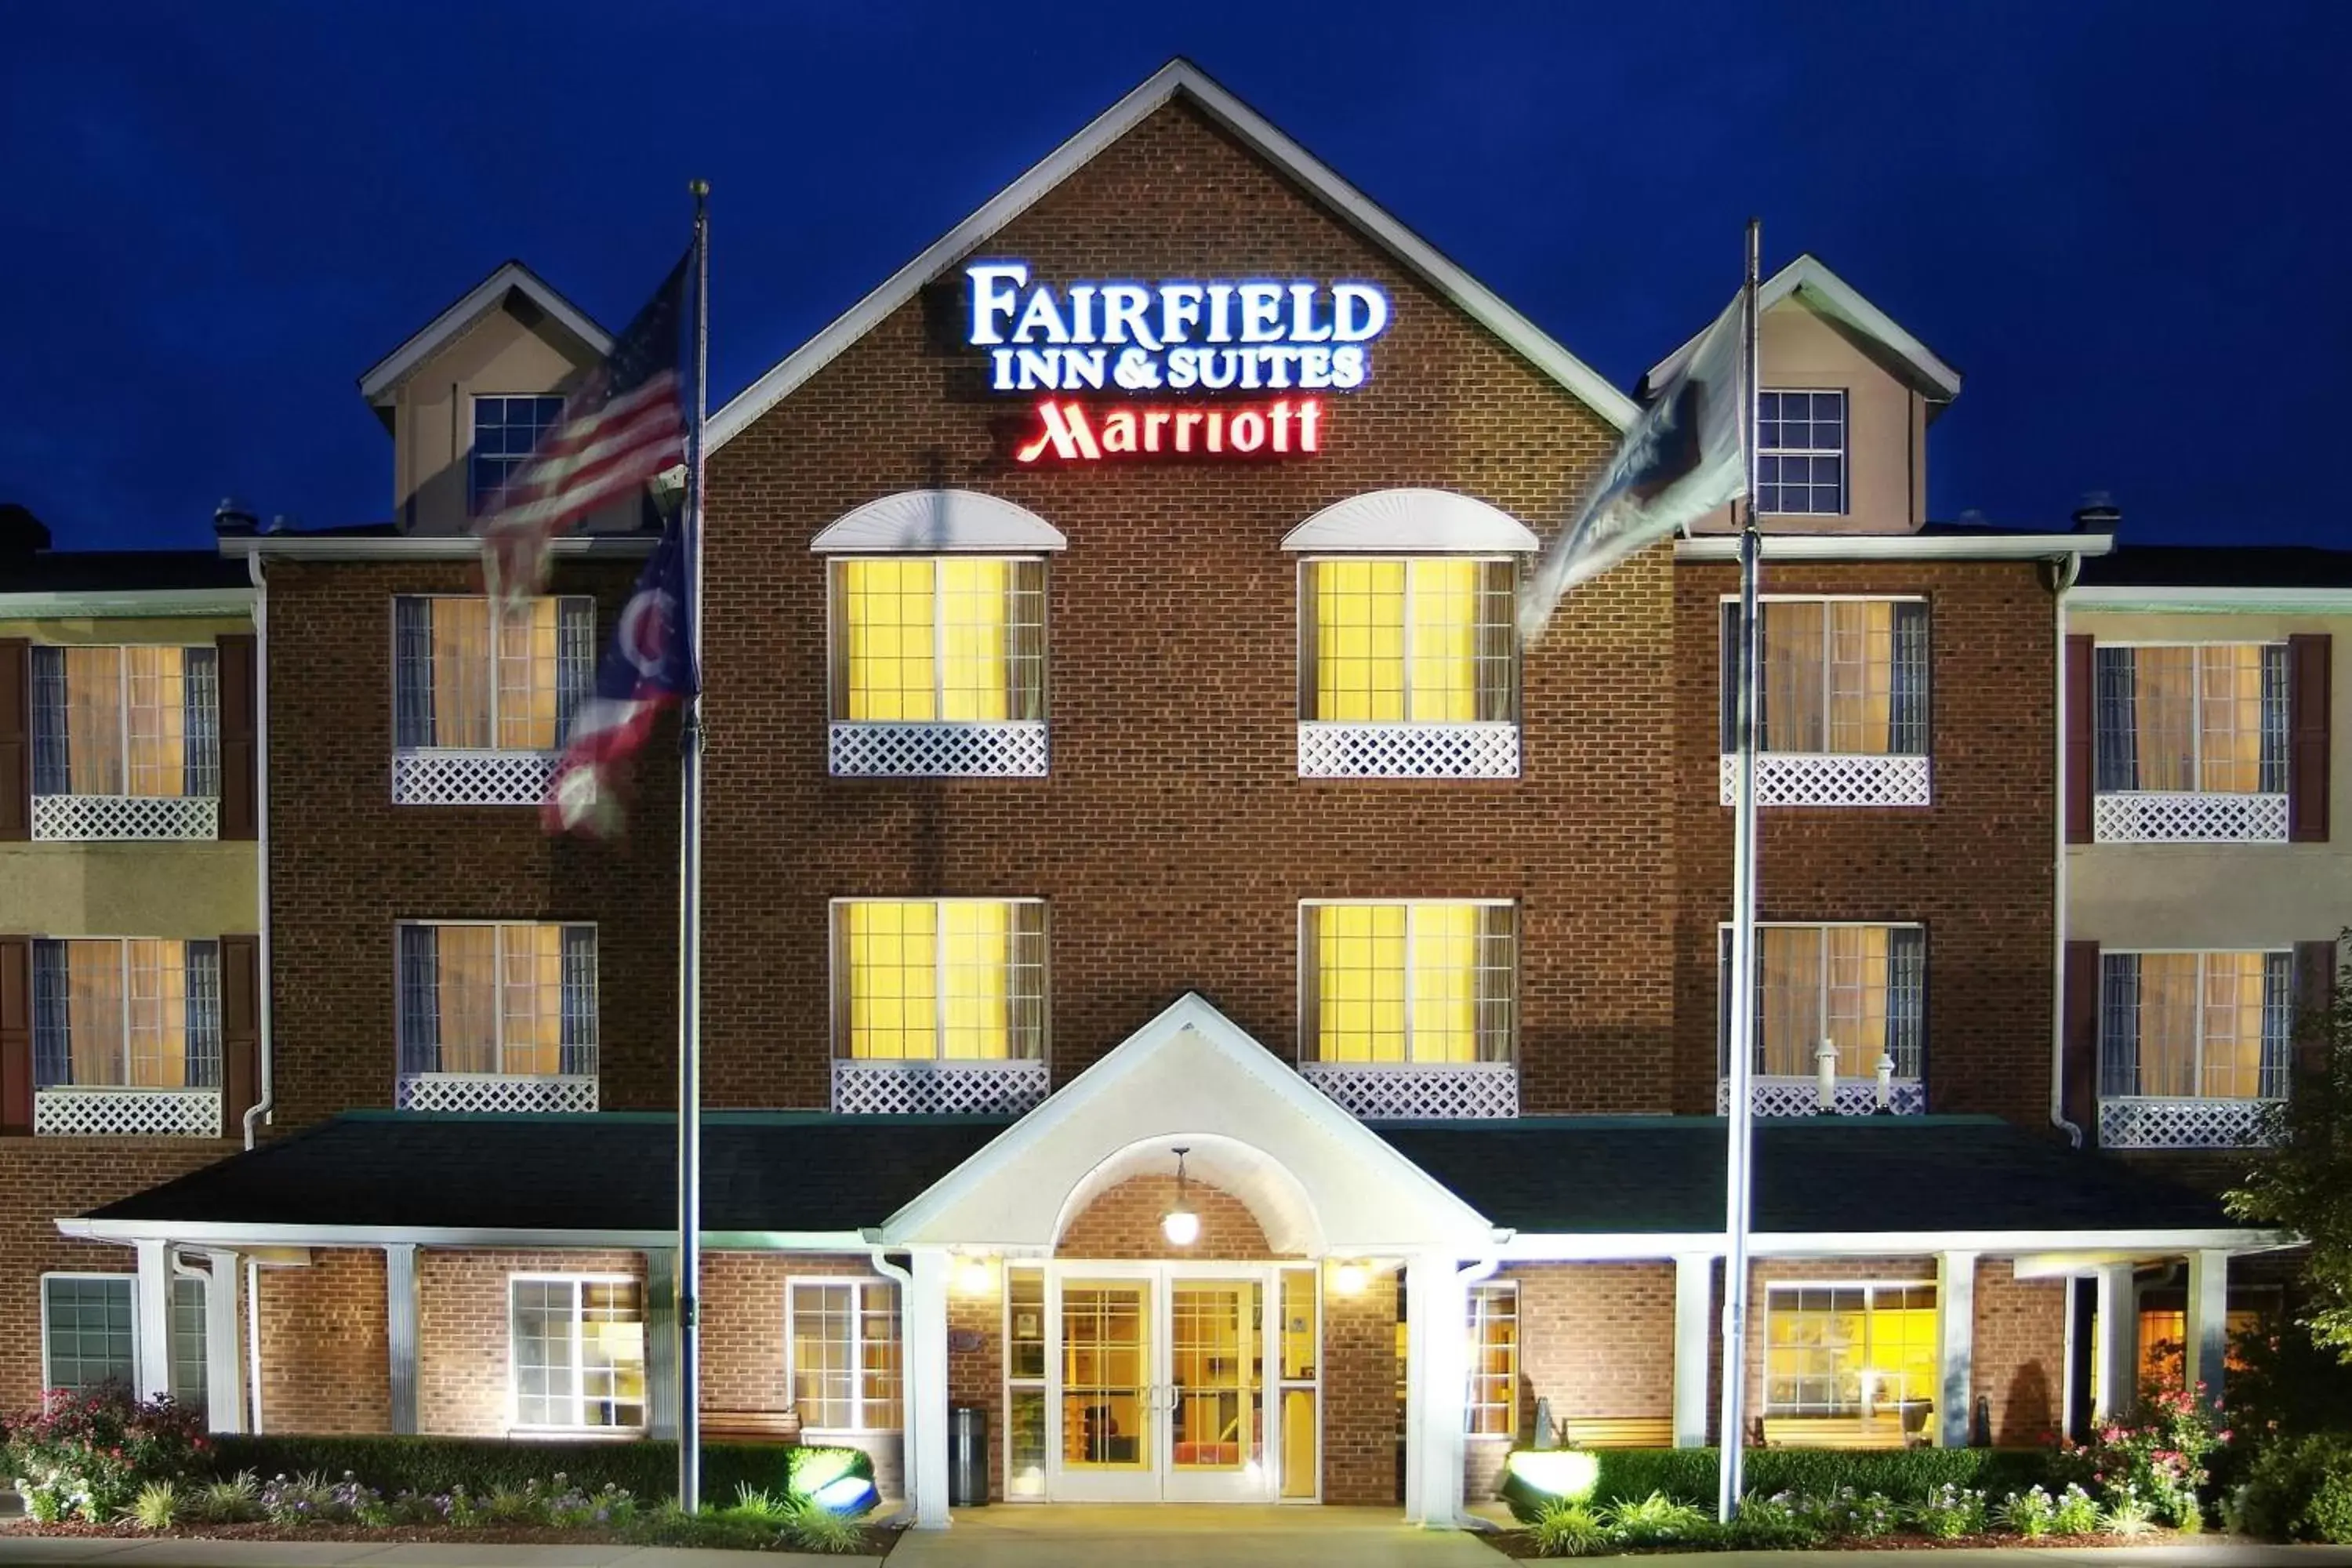 Property Building in Fairfield Inn and Suites by Marriott Cincinnati Eastgate